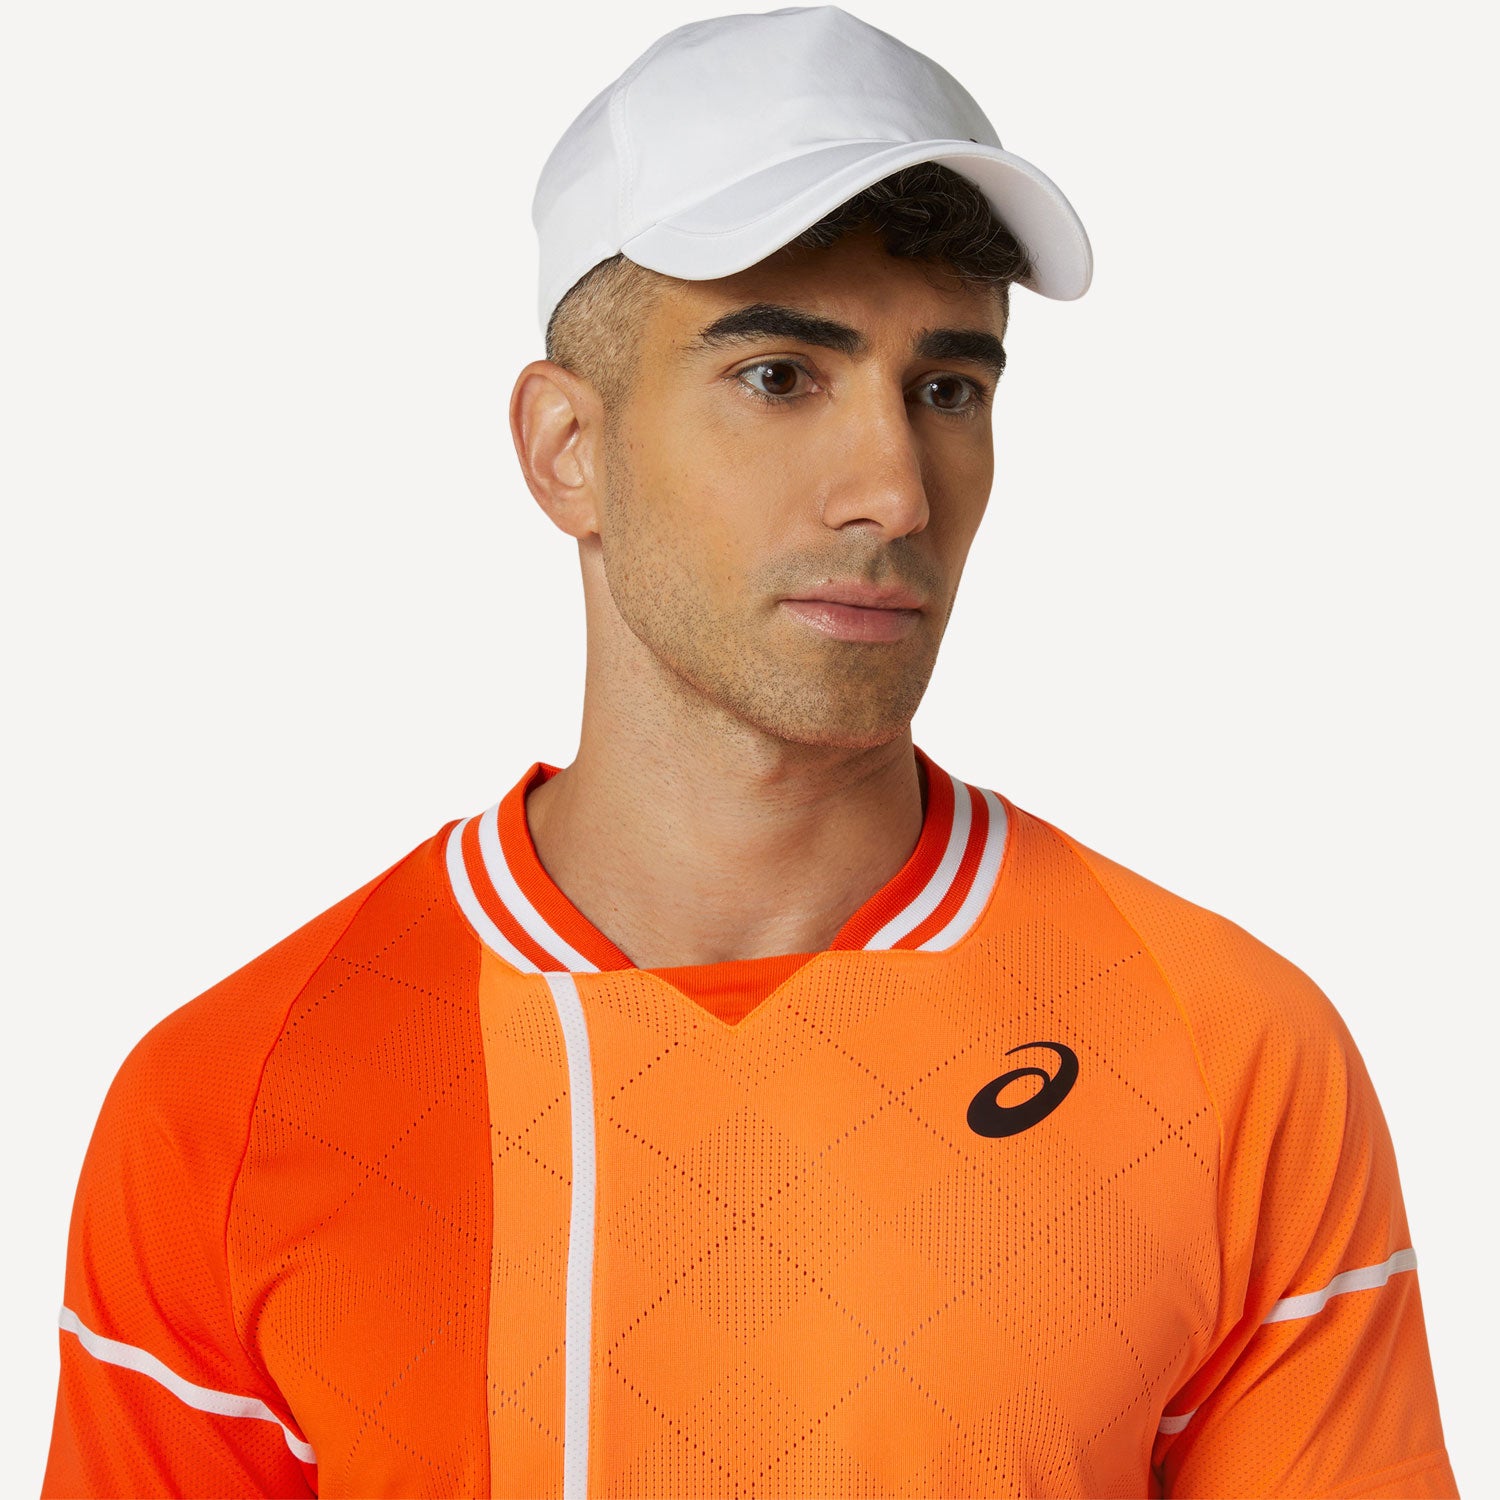 ASICS Match Men's Tennis Shirt - Orange (4)